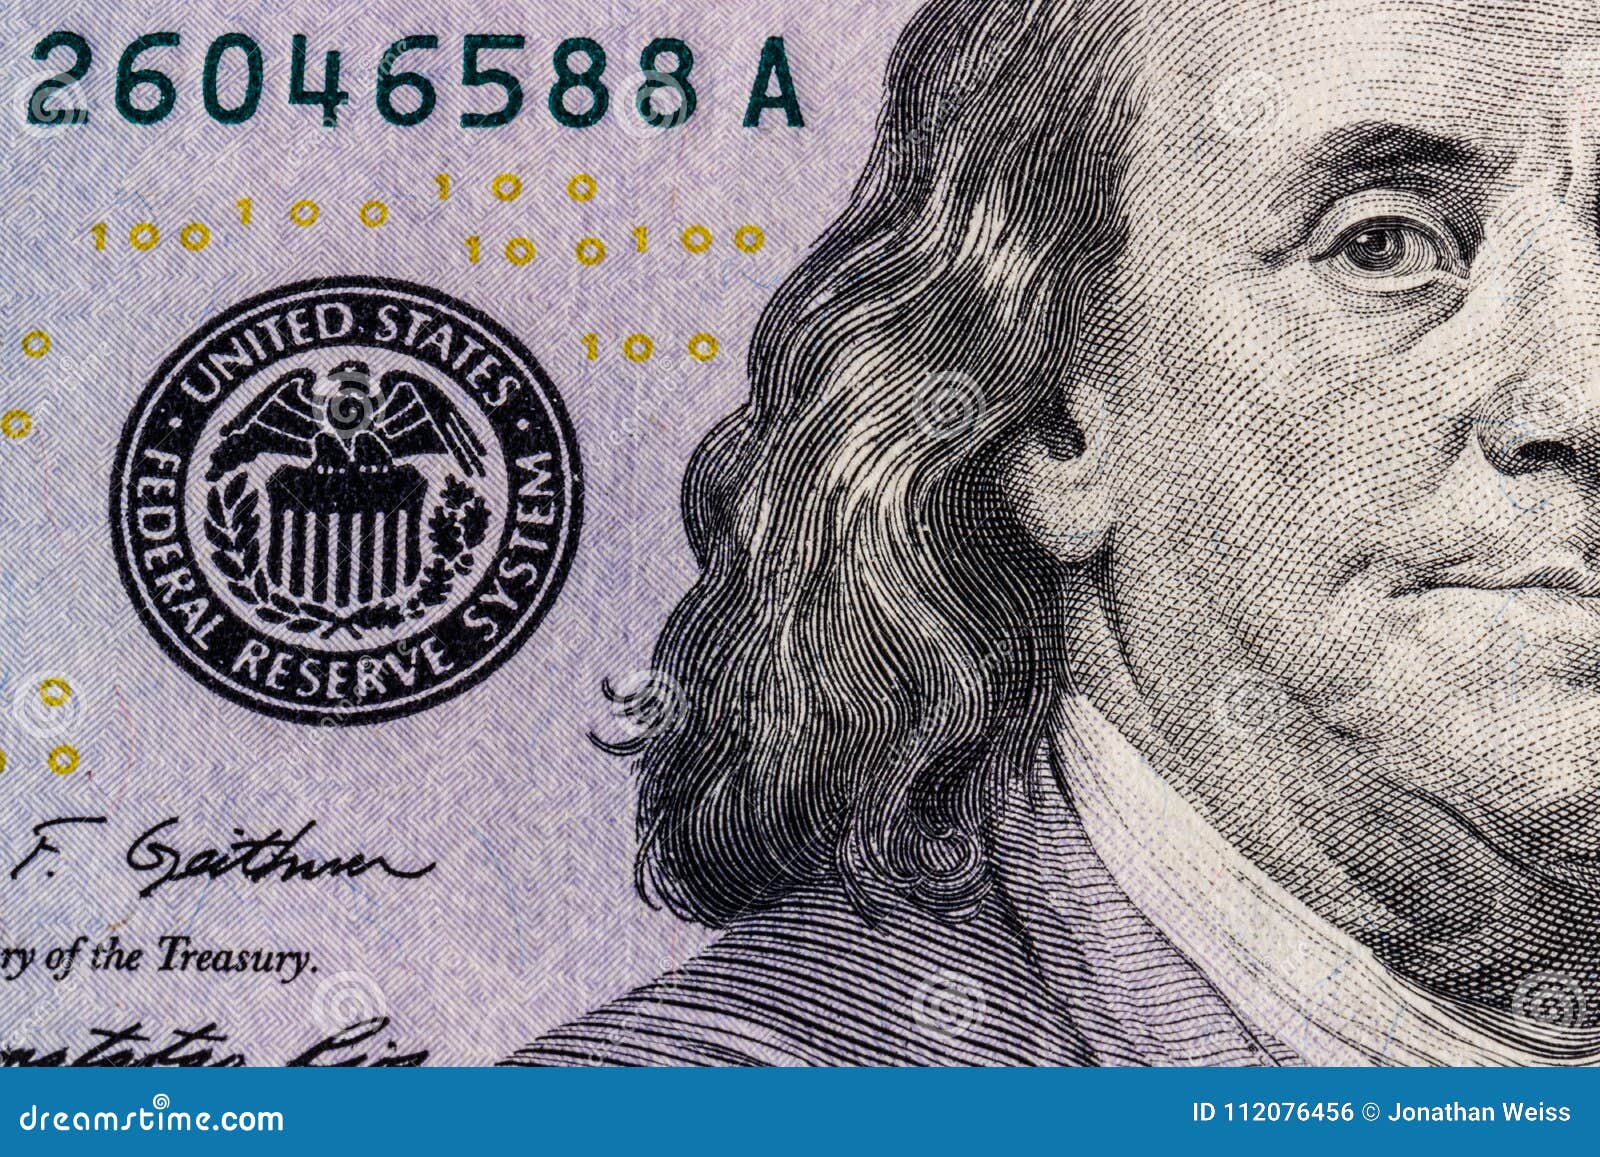 Франклин купюра. Франклин Бенджамин доллар. Бенджамин Франклин 100$. Франклин 100 долларов. Бенджамин Франклин купюра.